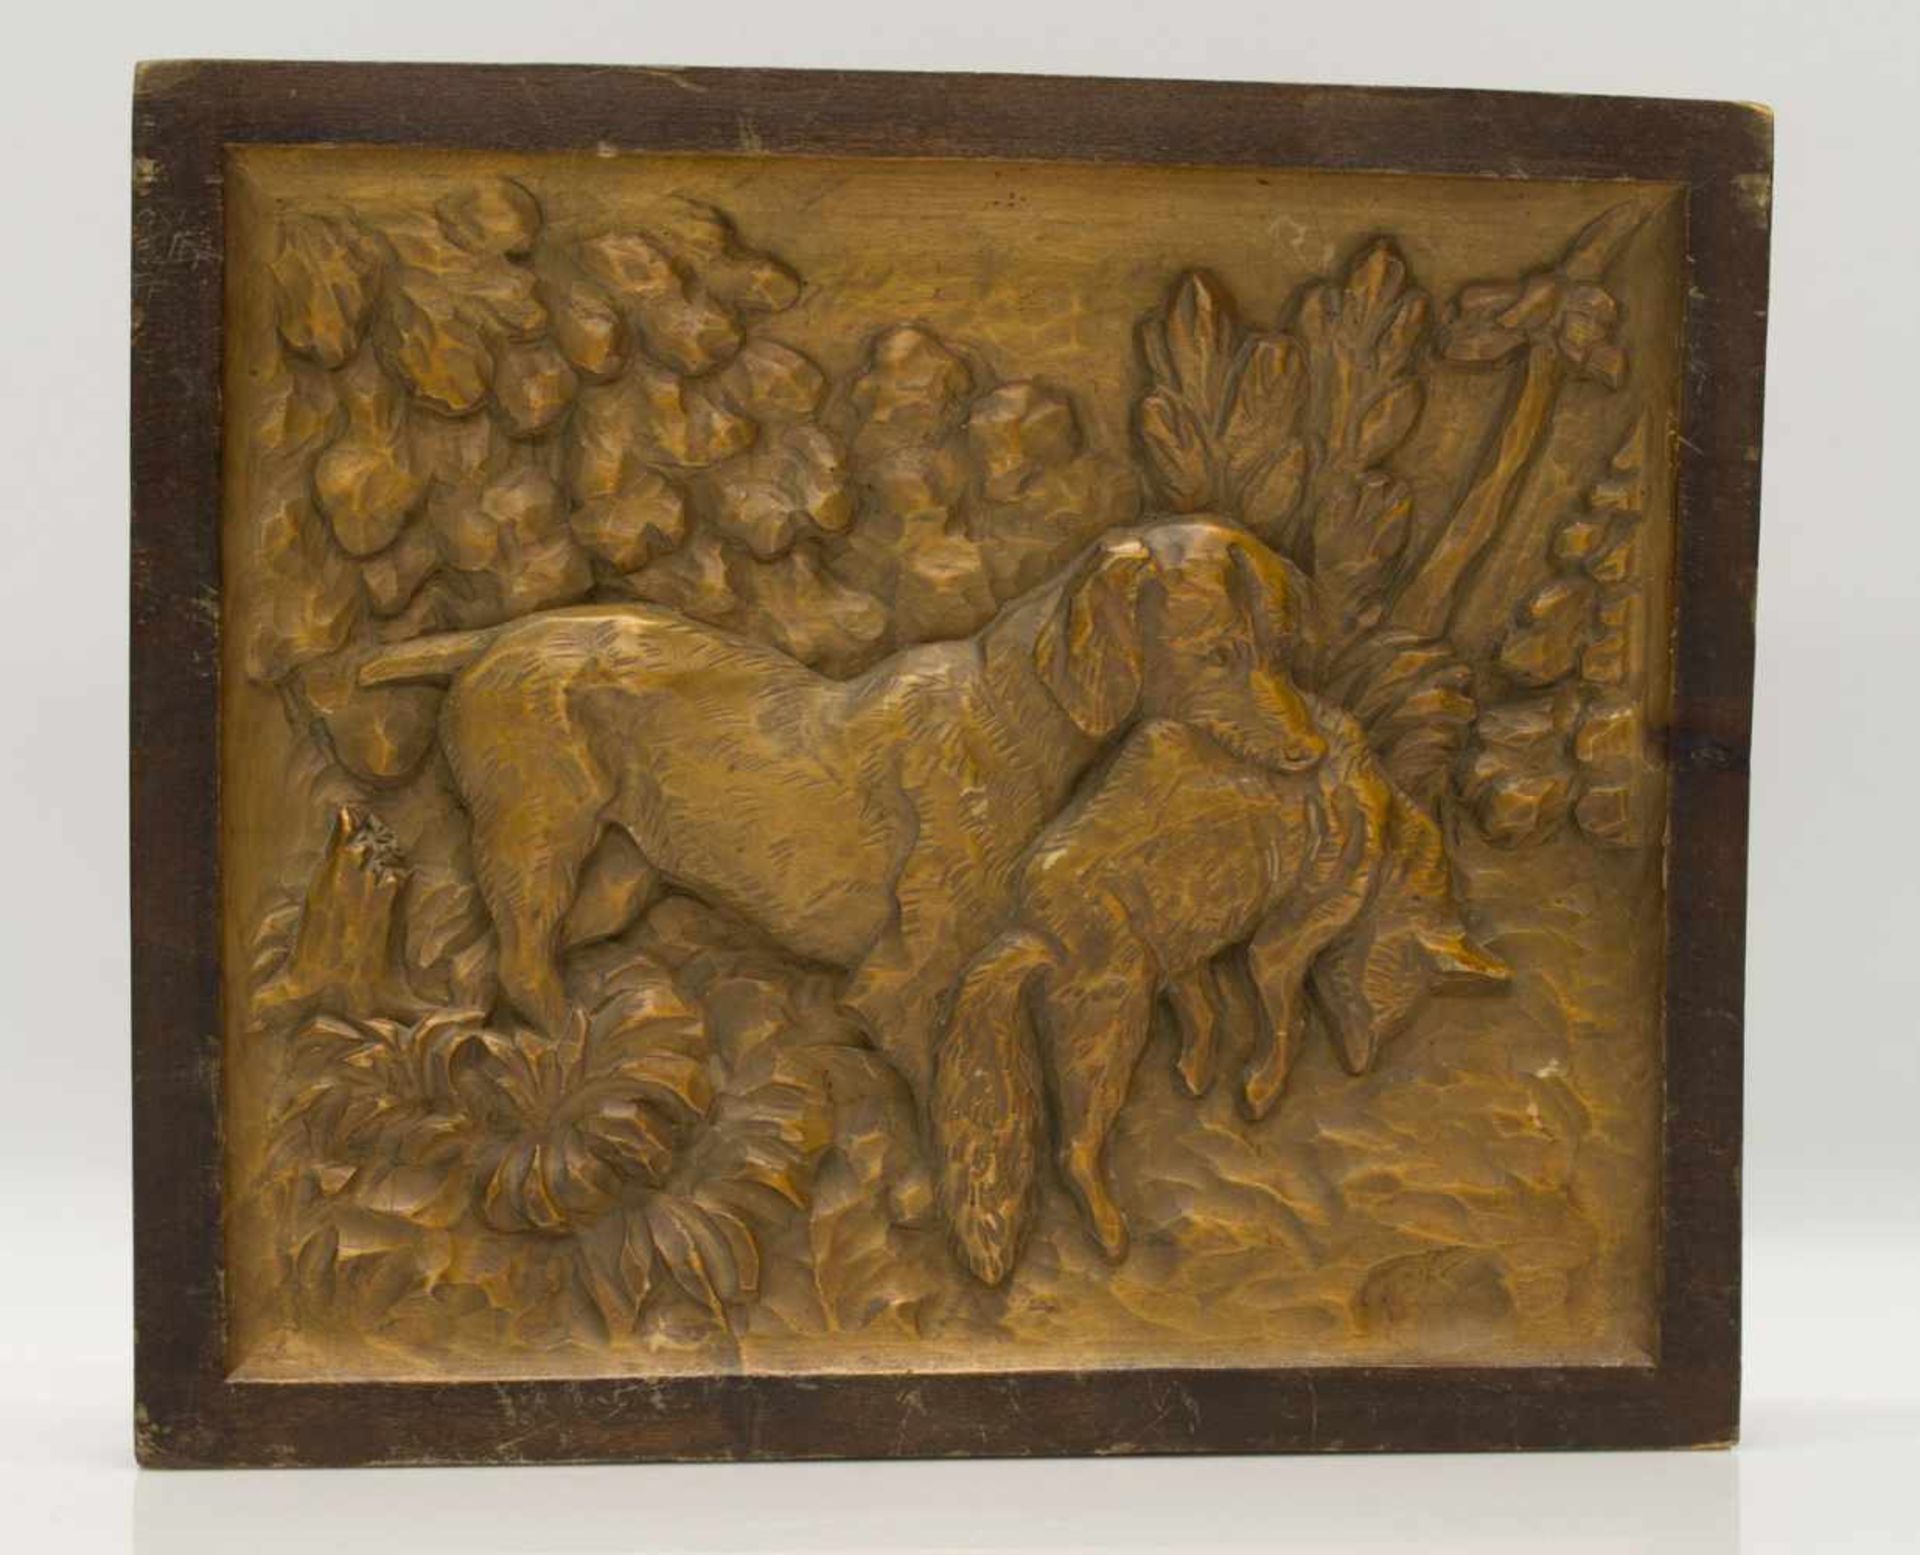 JagdbildJagdhund mit erlegtem Fuchs, Linde geschnitzt, halbplastisches Reliefbild um 1930er Jahre,